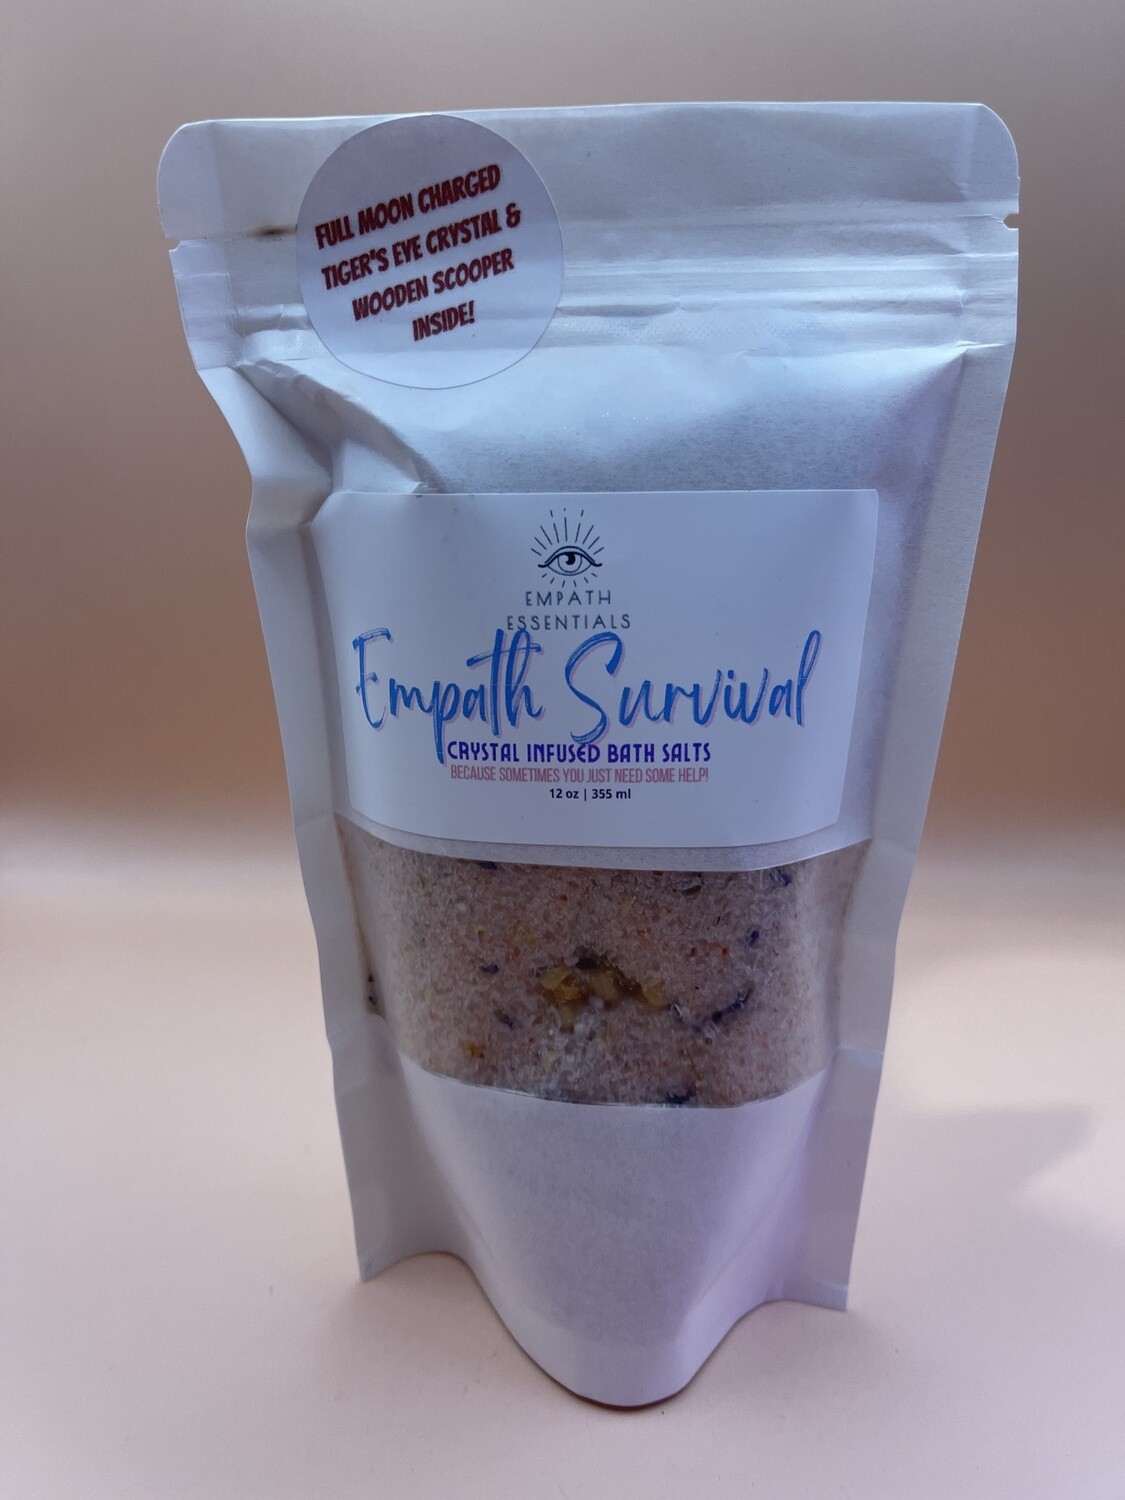 Empath Survival Crystal Infused Bath Salts